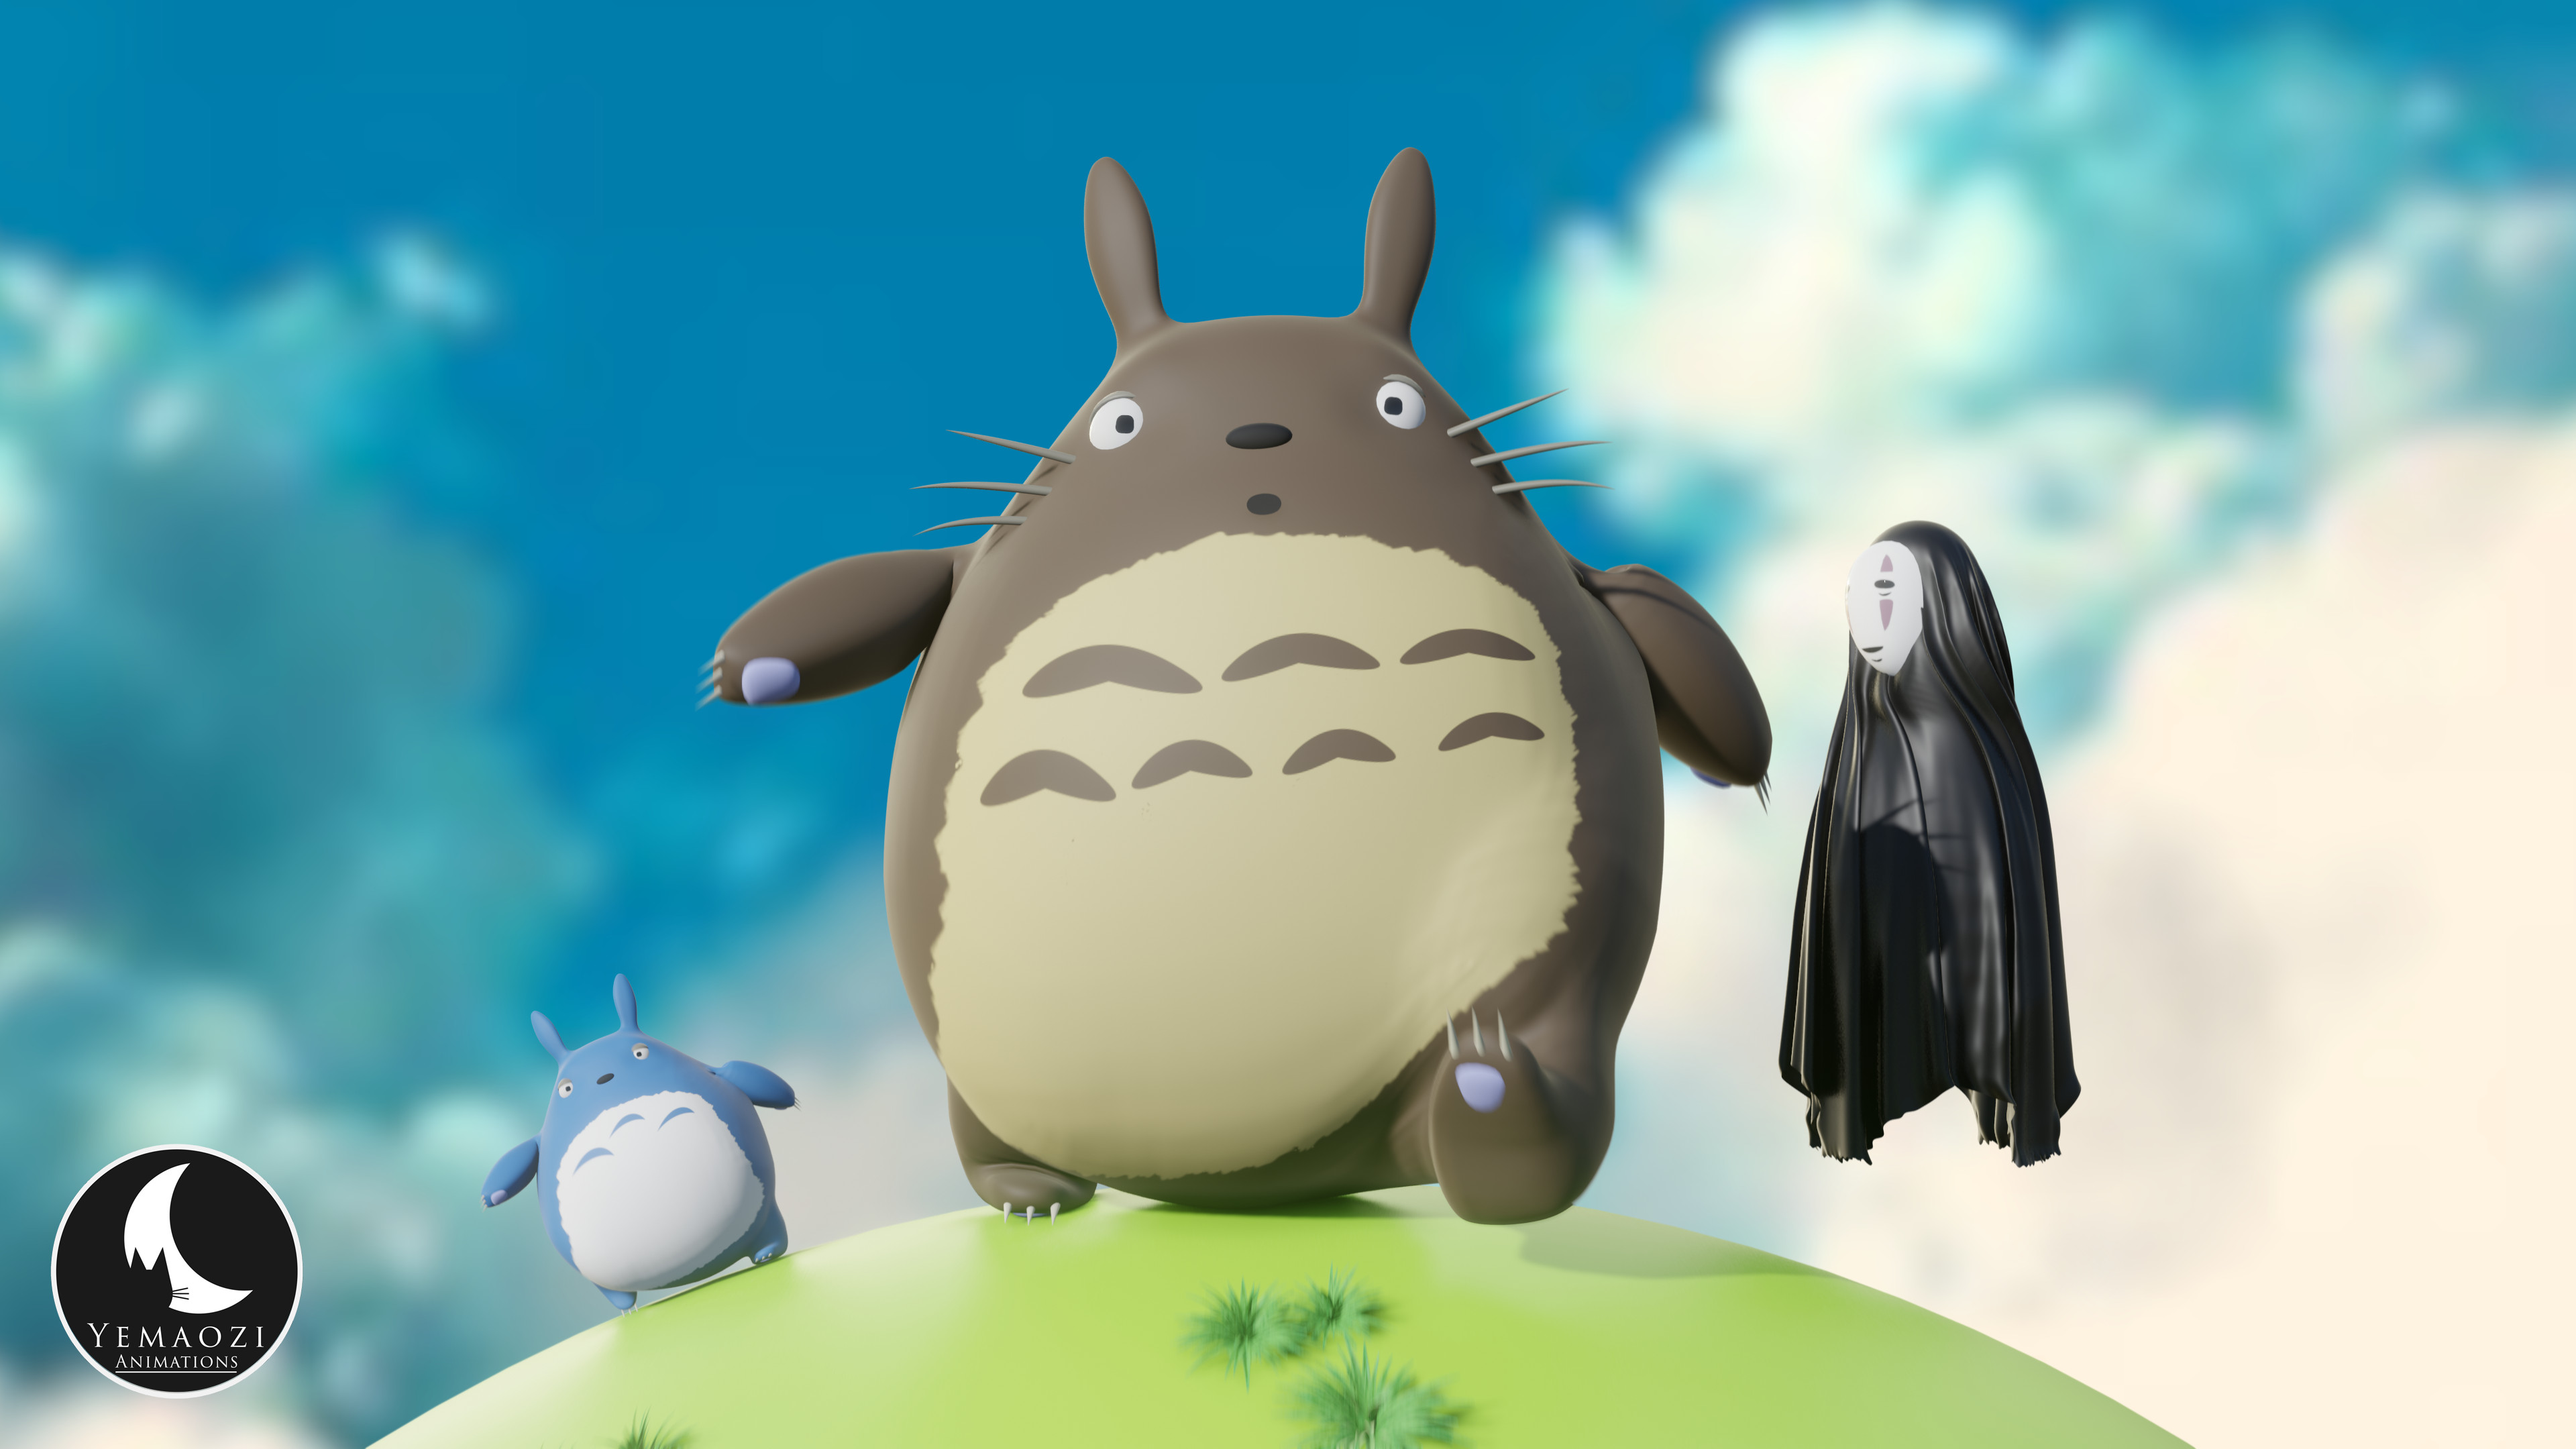 Yemaozi Animations - Totoro